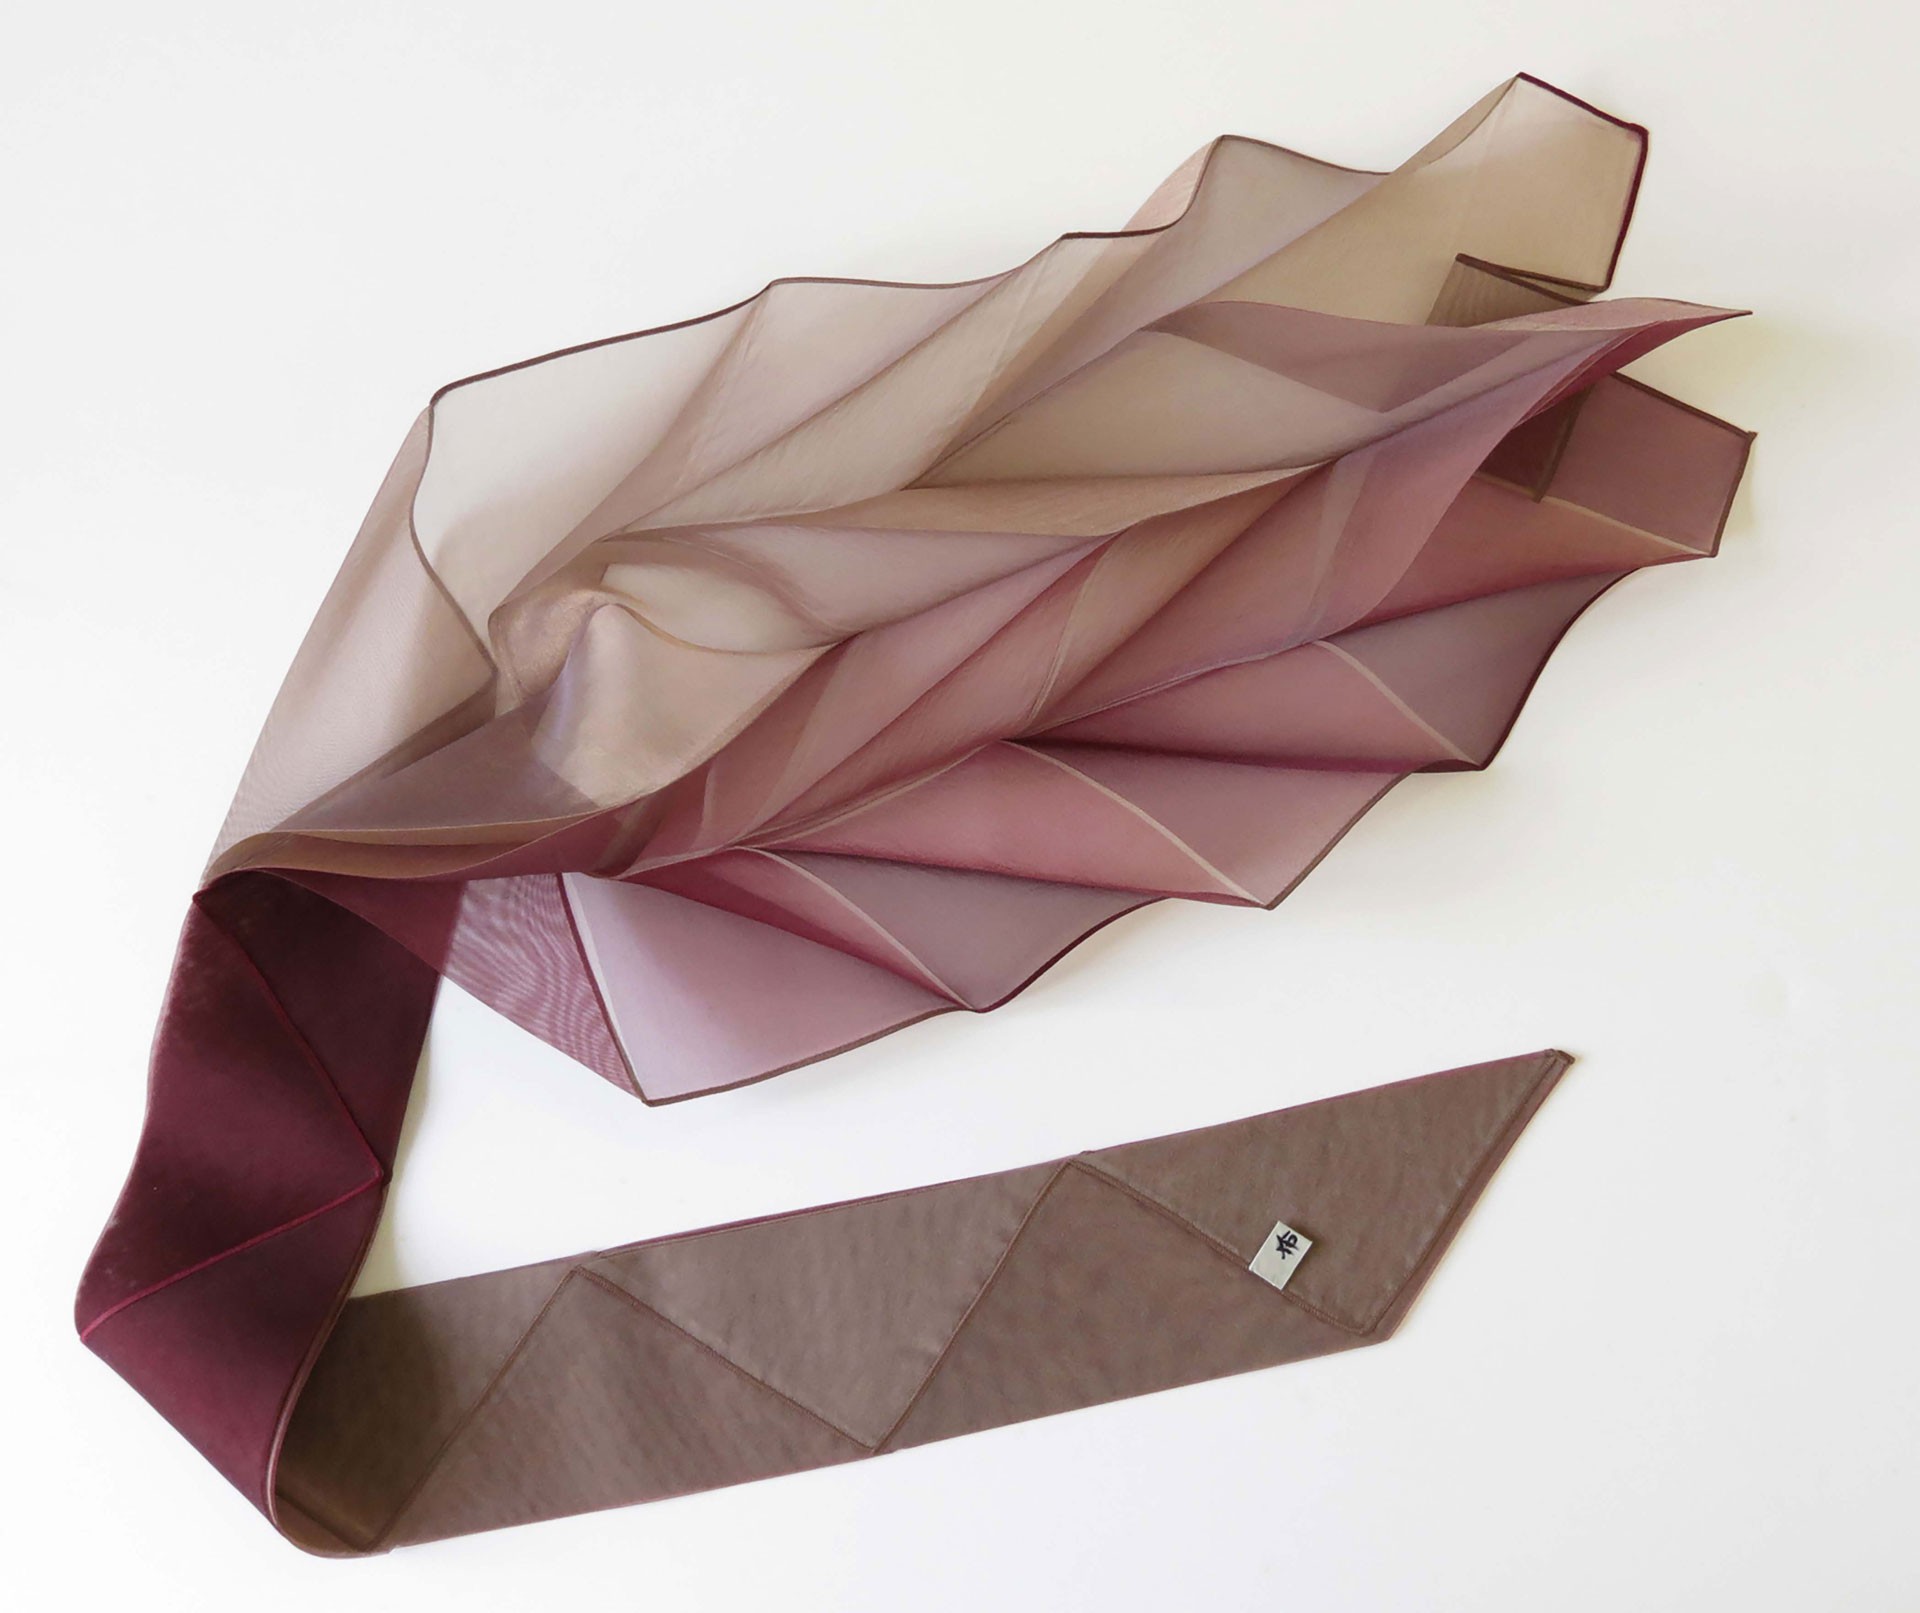 <BODY><div>SUDŌ Reiko, scarf in shaded beige/pale pink/wine red, 1997</div><div>Synthetic fibers, plissé</div><div>© MAK/Branislav Djordjevic</div></BODY>